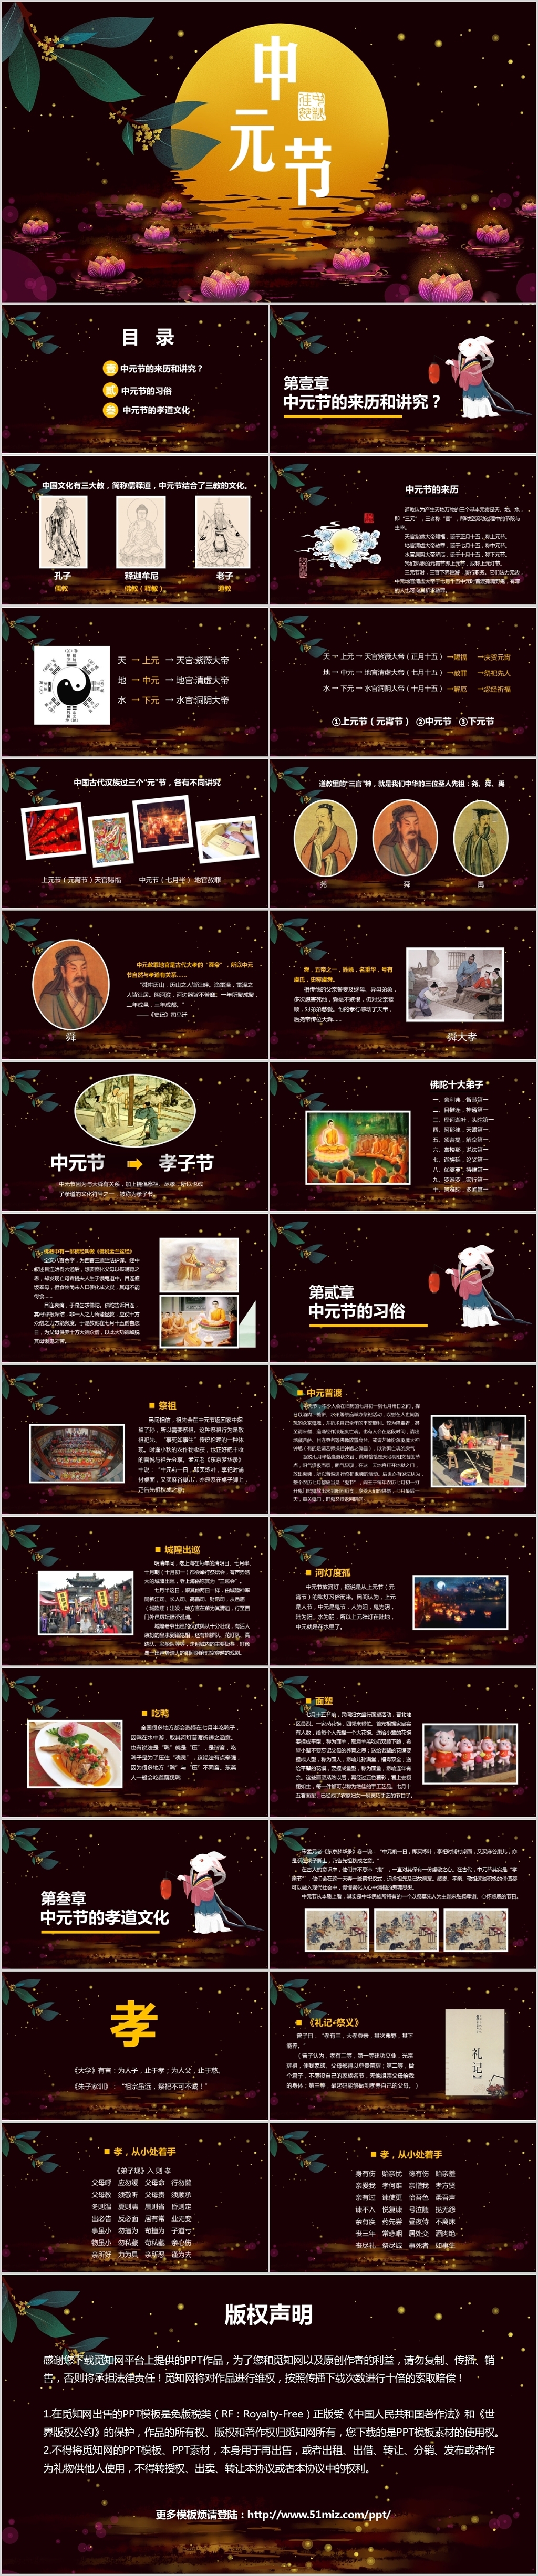 简约大气中国文化传统节日之中元节民风民俗主题ppt模板